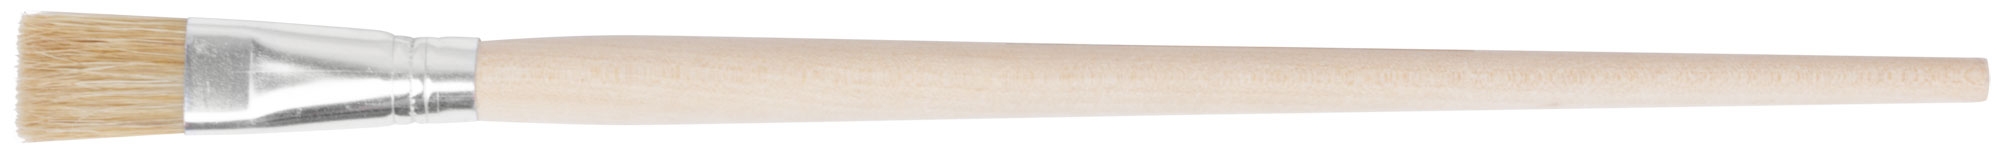 Кисть художественная плоская  № 14 ( 15 мм ) FIT 01254 кисть плоская hardy n35 натуральная щетина светлая длина ворса 45 мм деревянная ручка 1 5